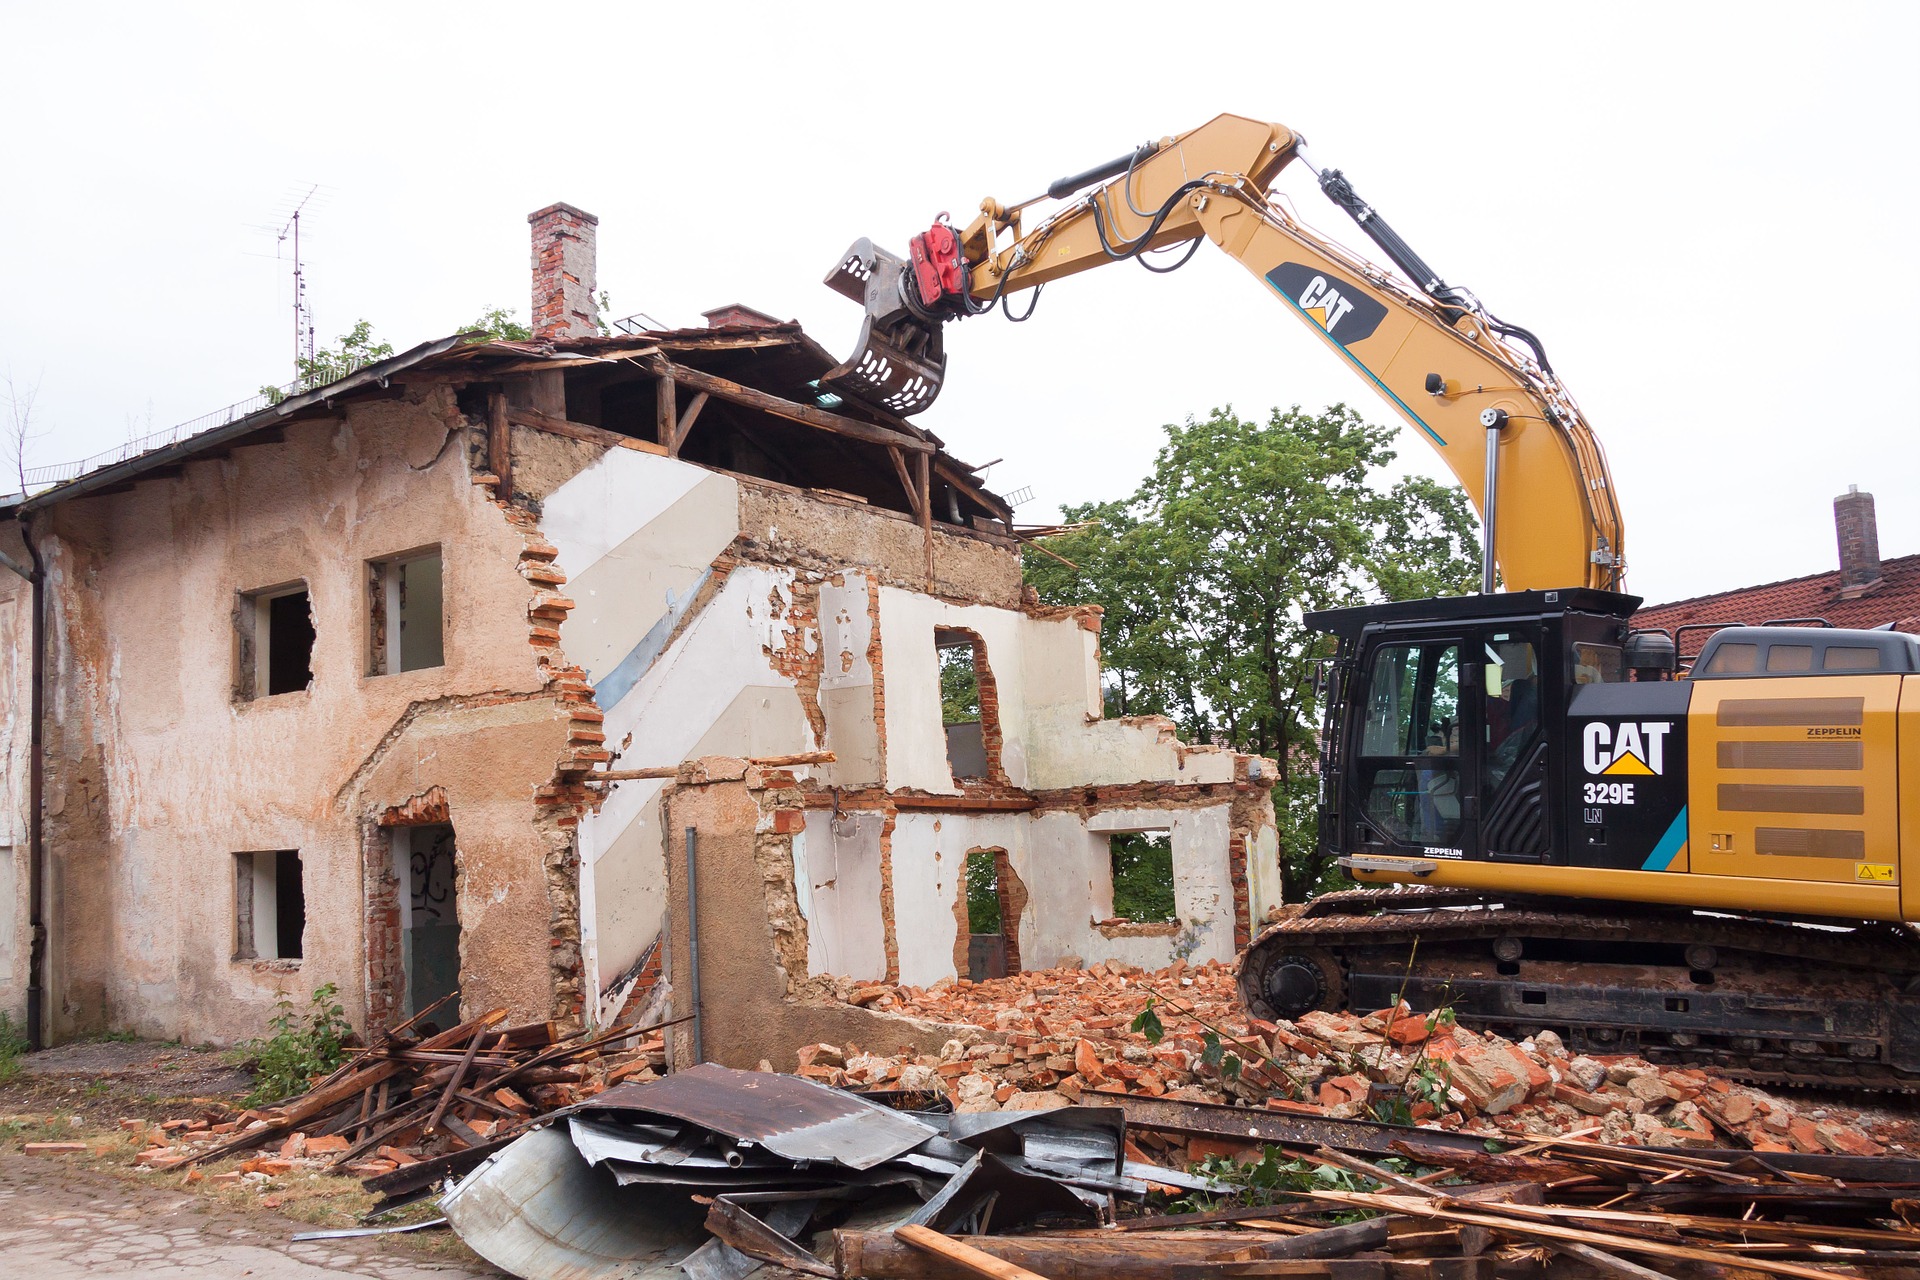 Demolition and Dismantling